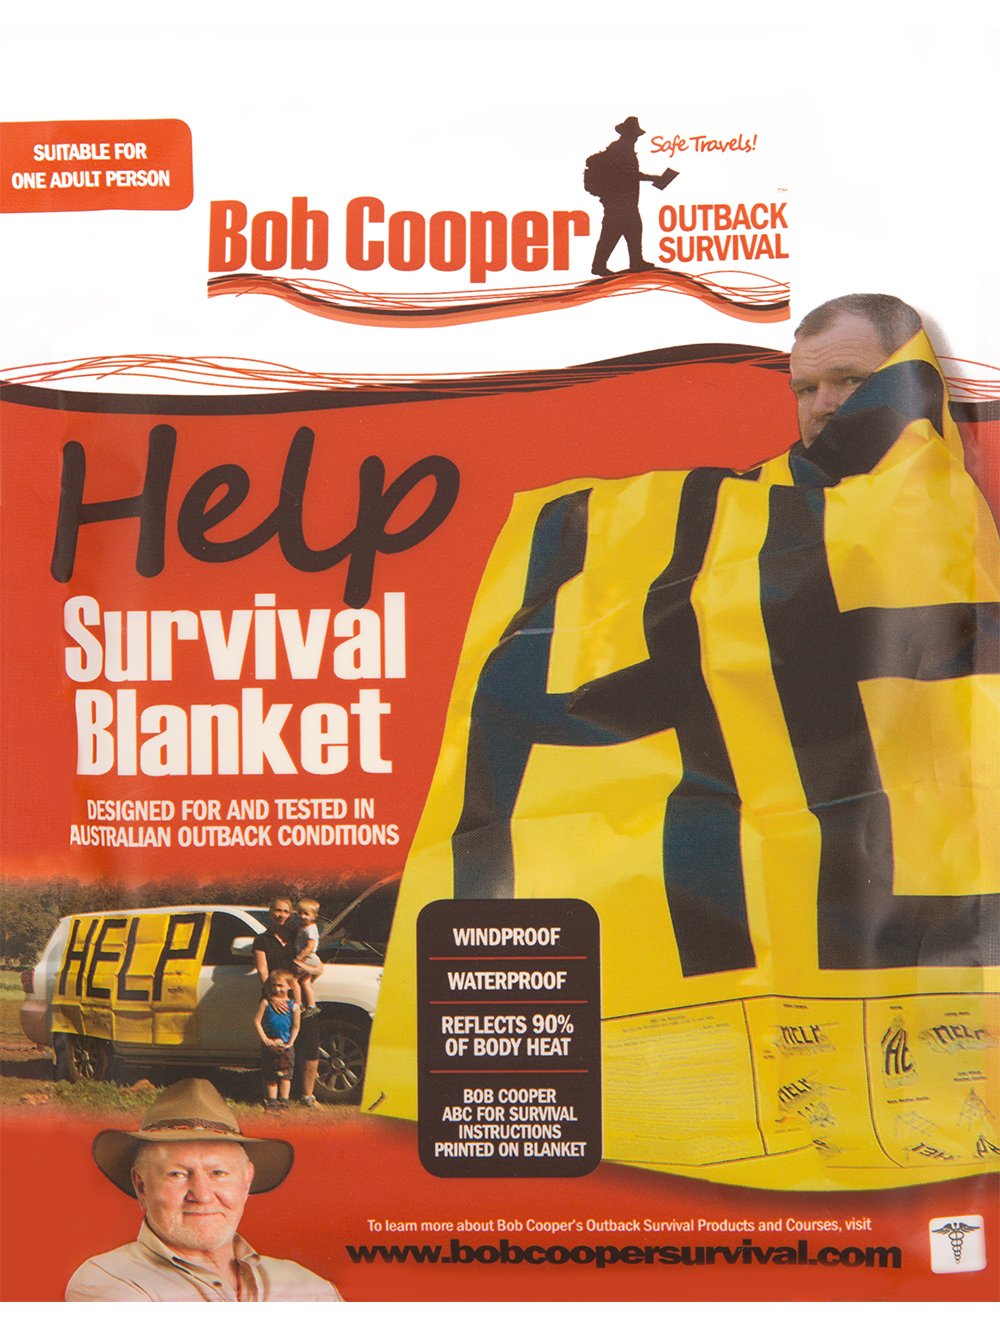 BOB COOPER Help Survival Blanket